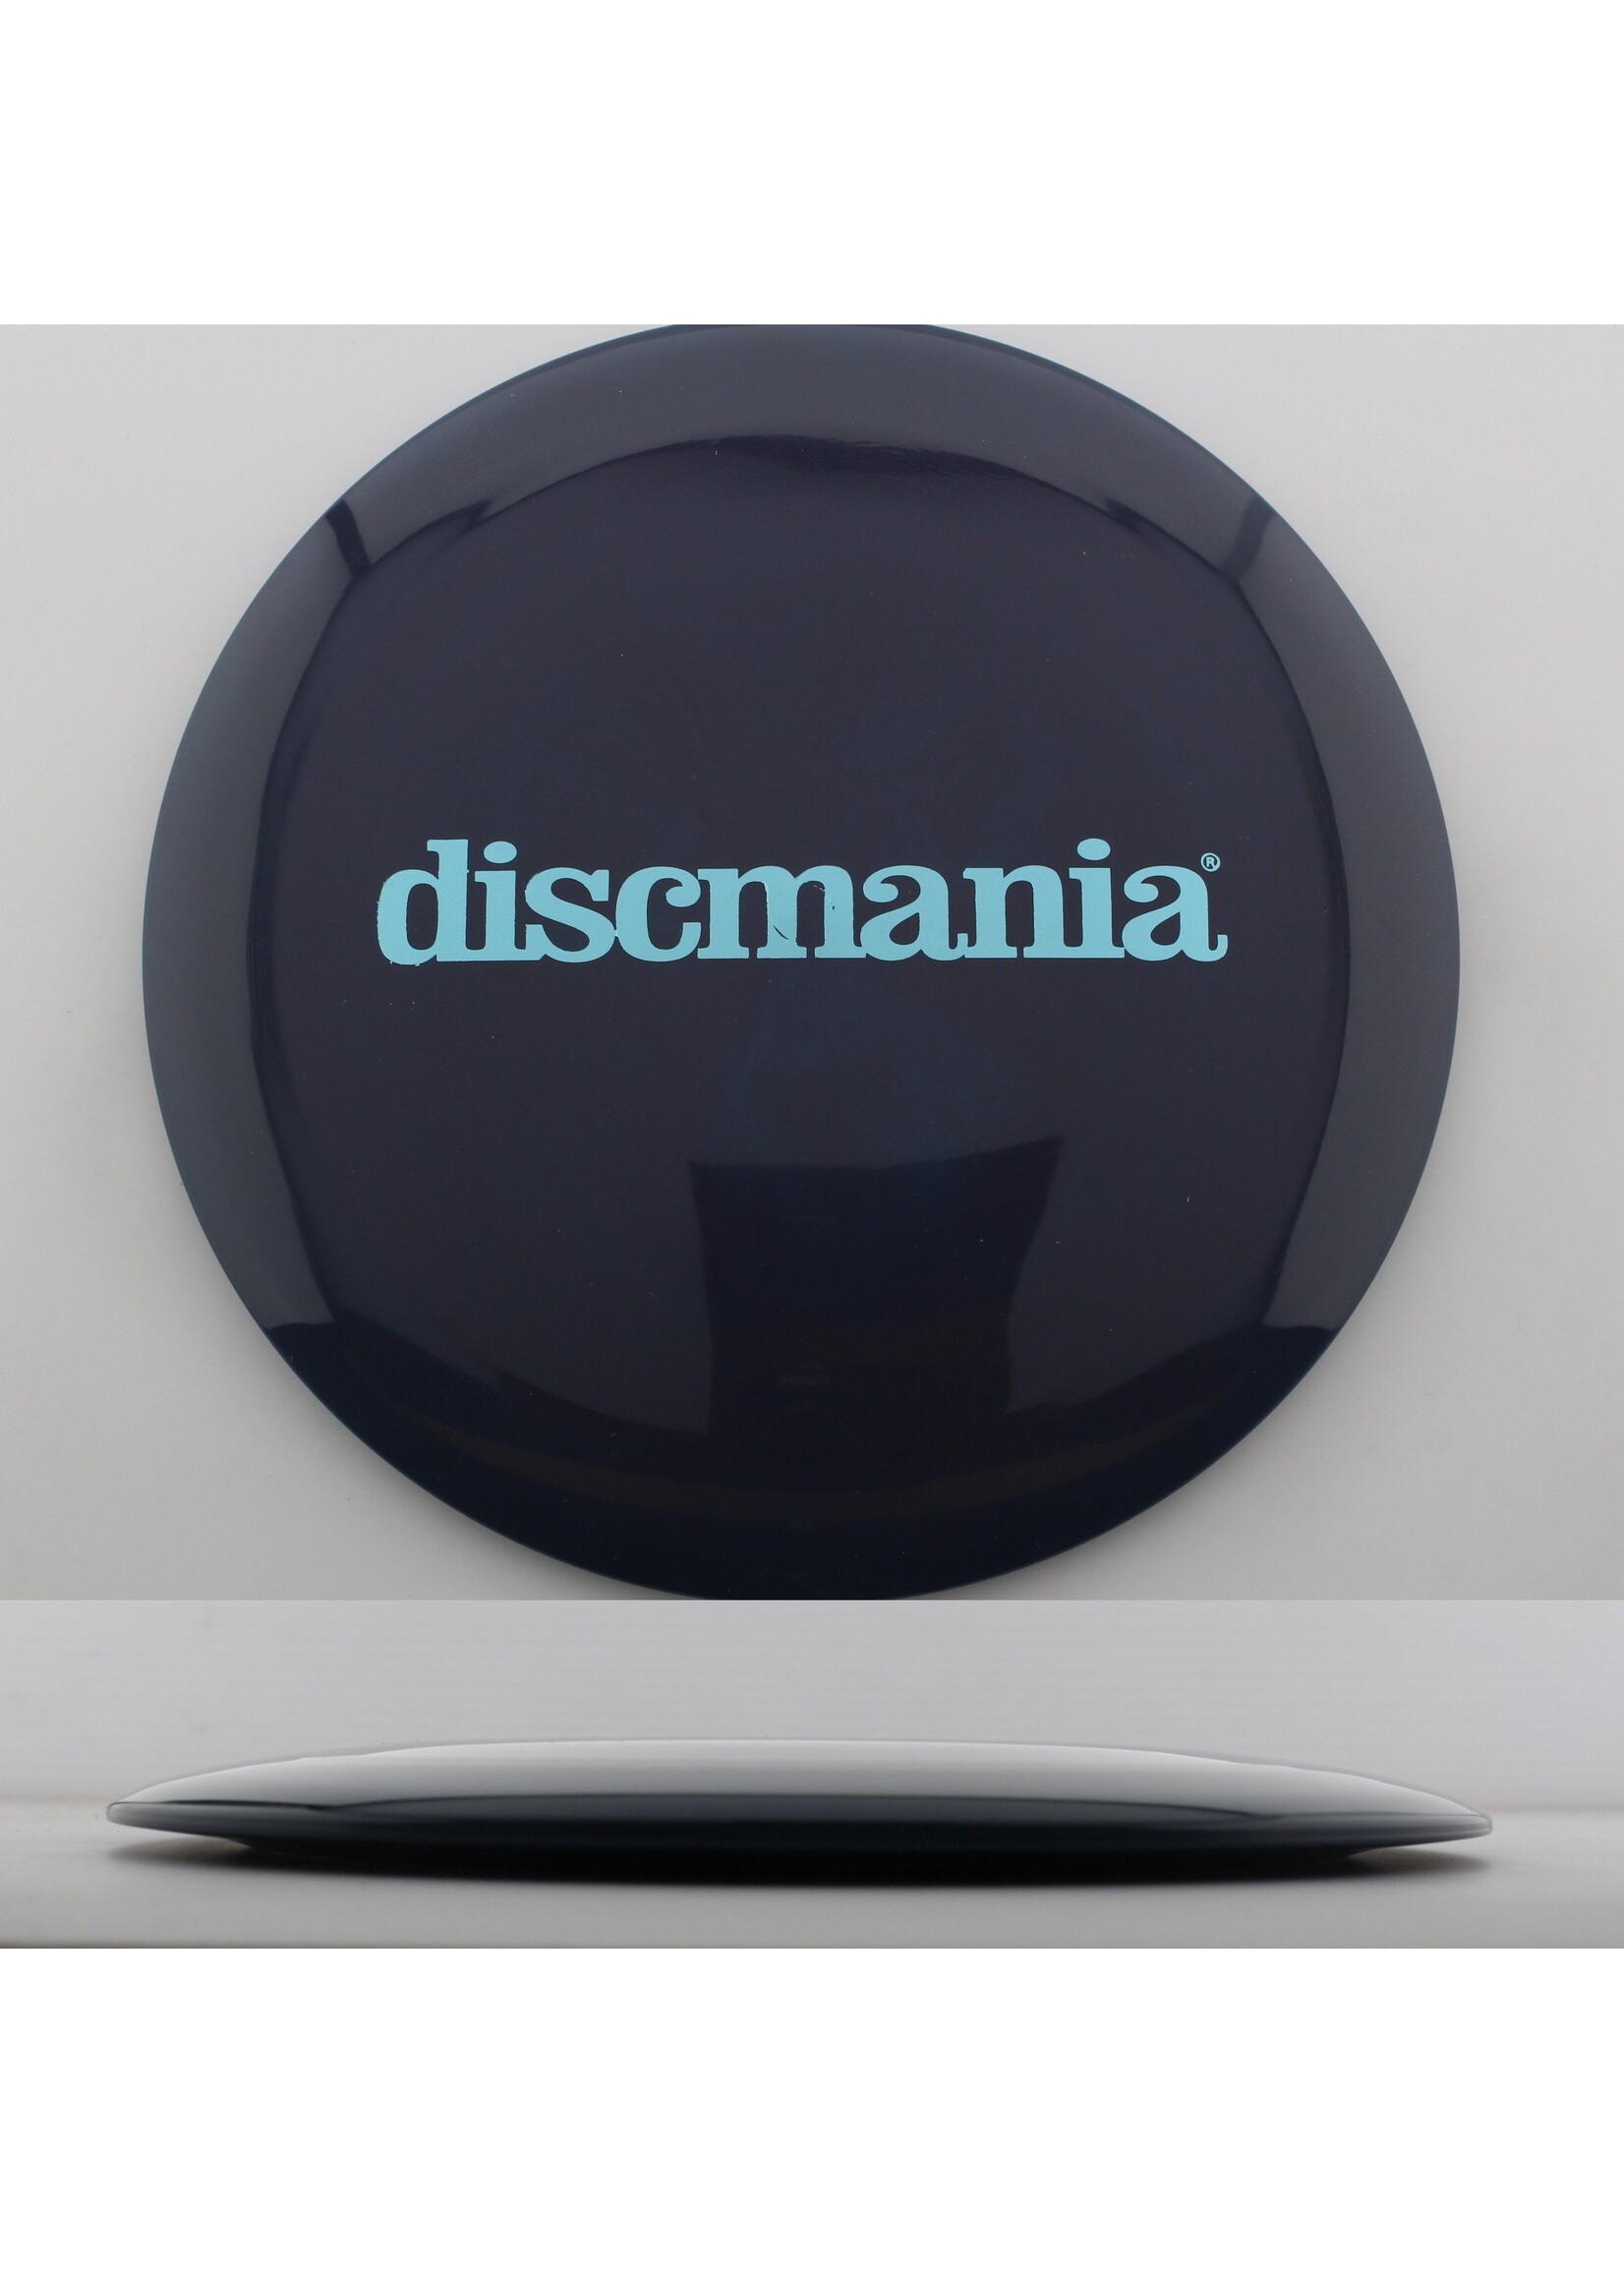 DiscMania Discmania Swirly S-line DD3 (Originals Bar Stamp) - 165-169